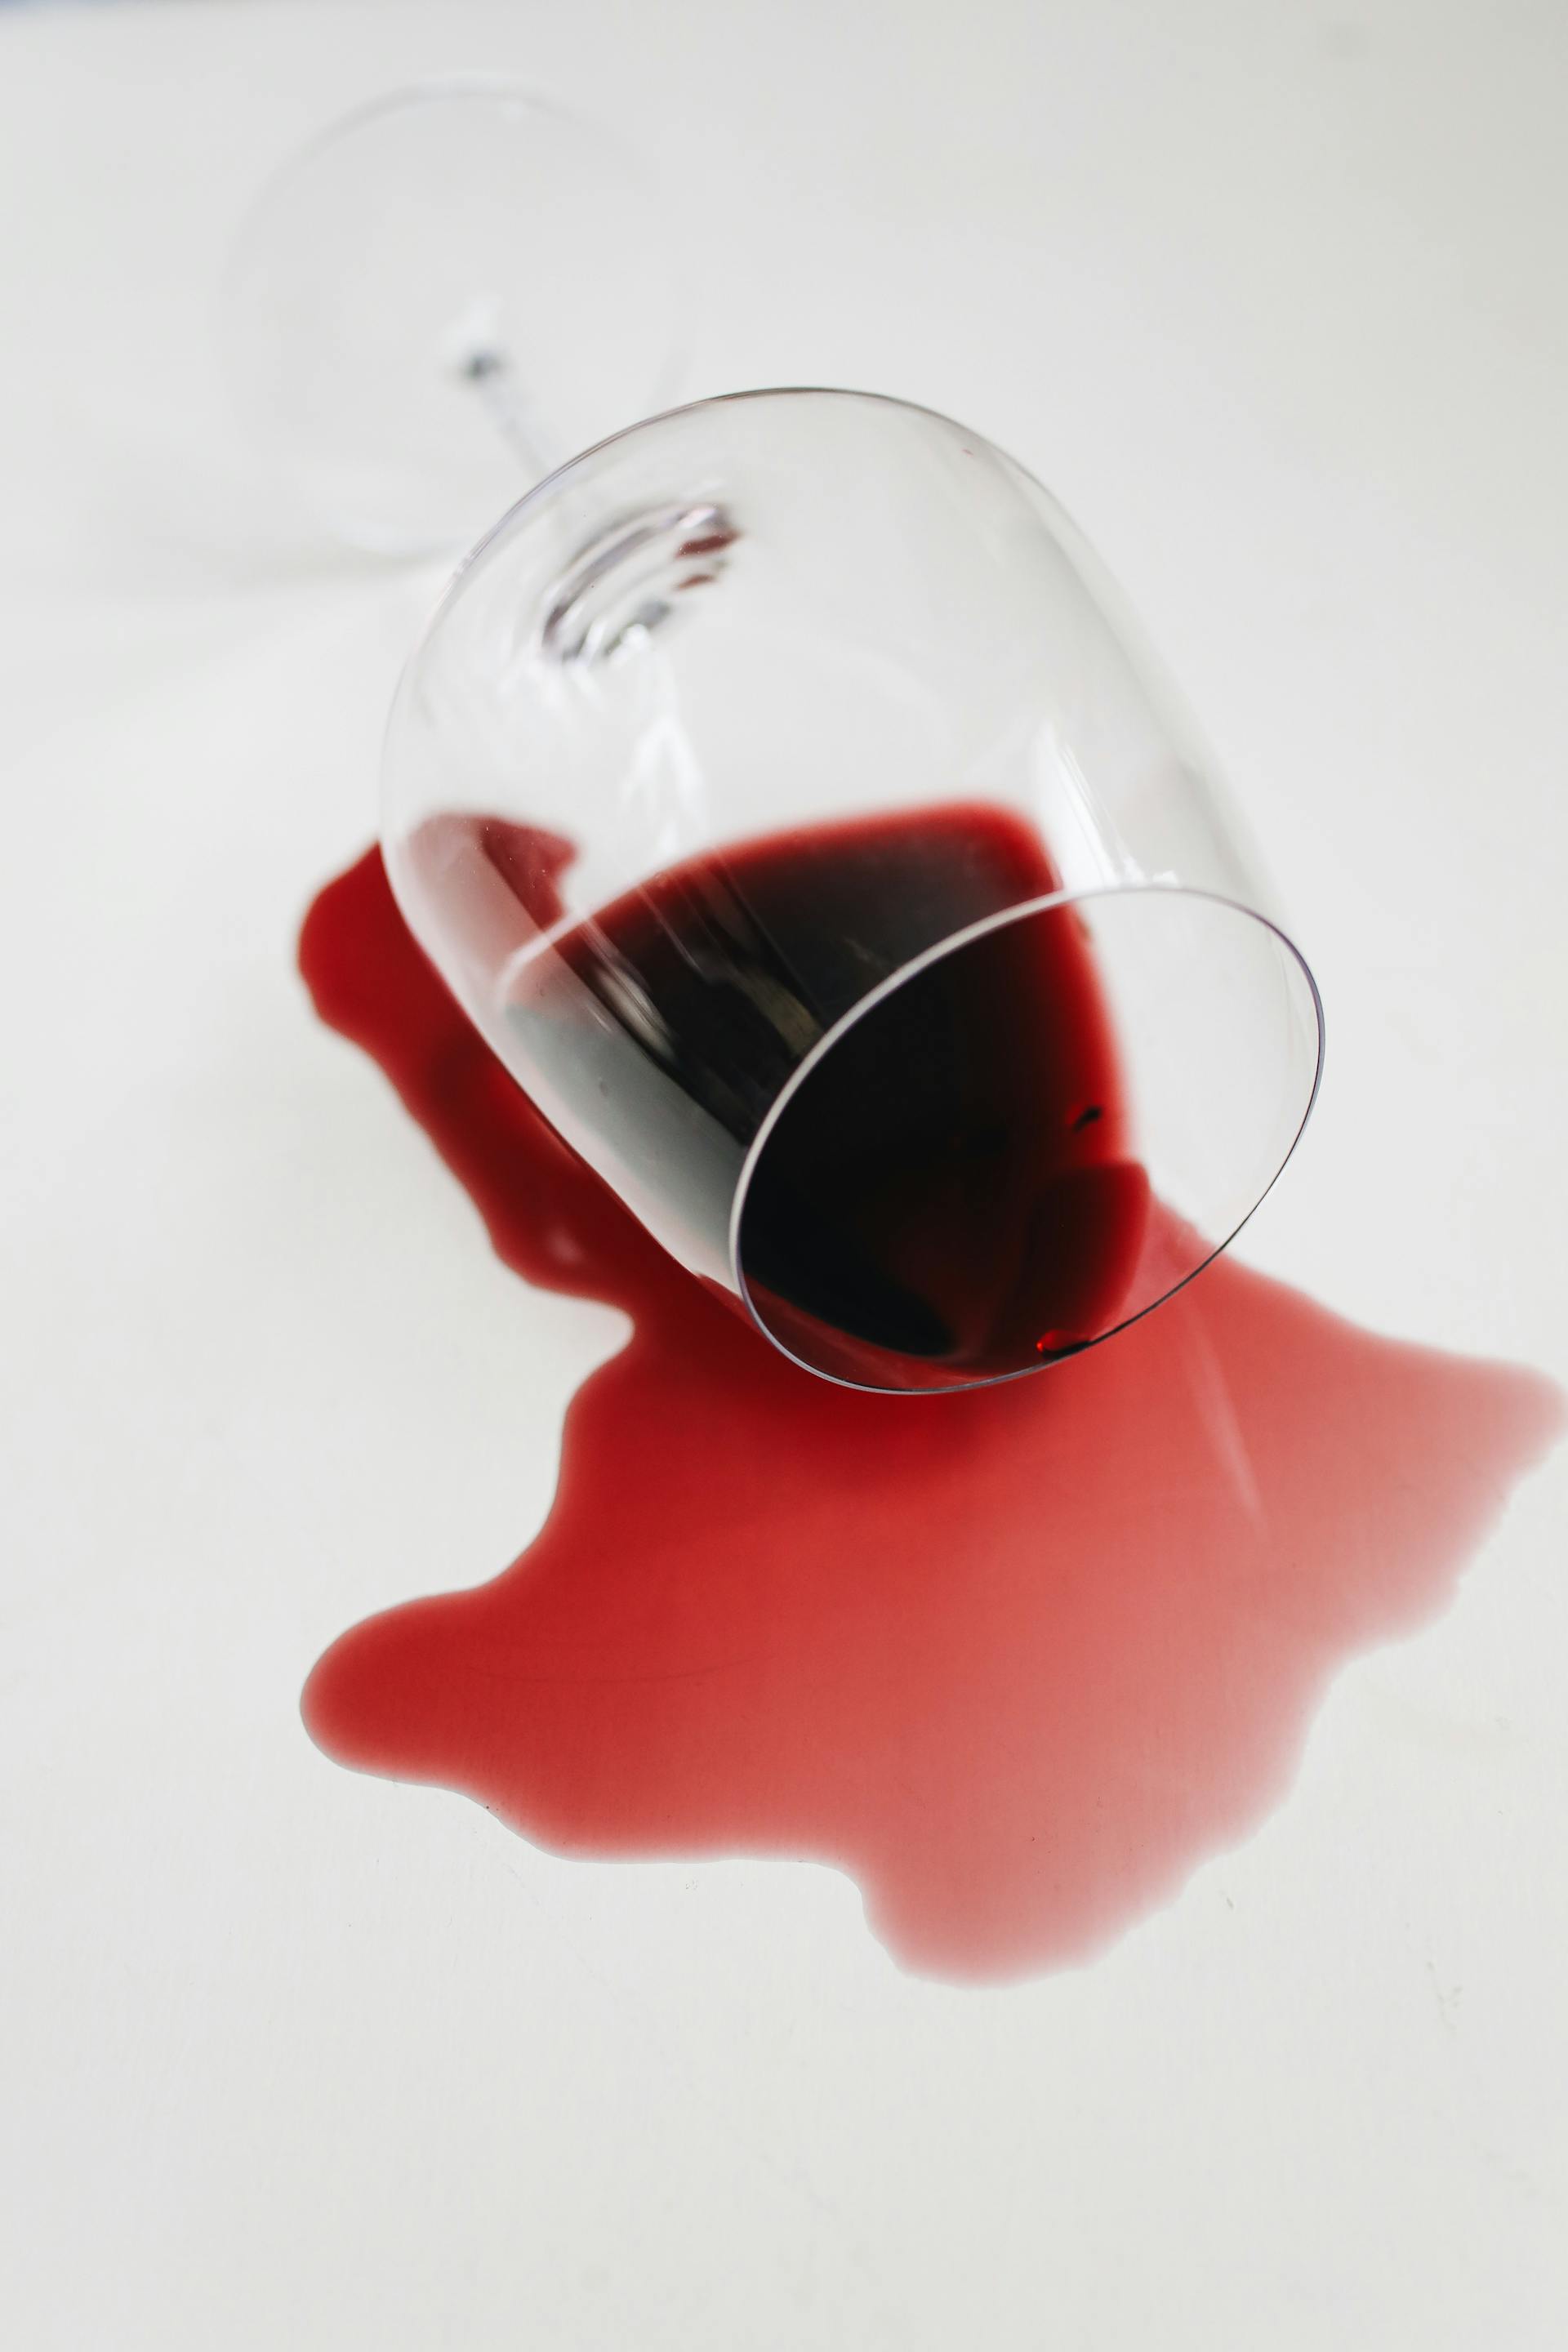 Vino tinto derramado de un vaso | Foto: Pexels